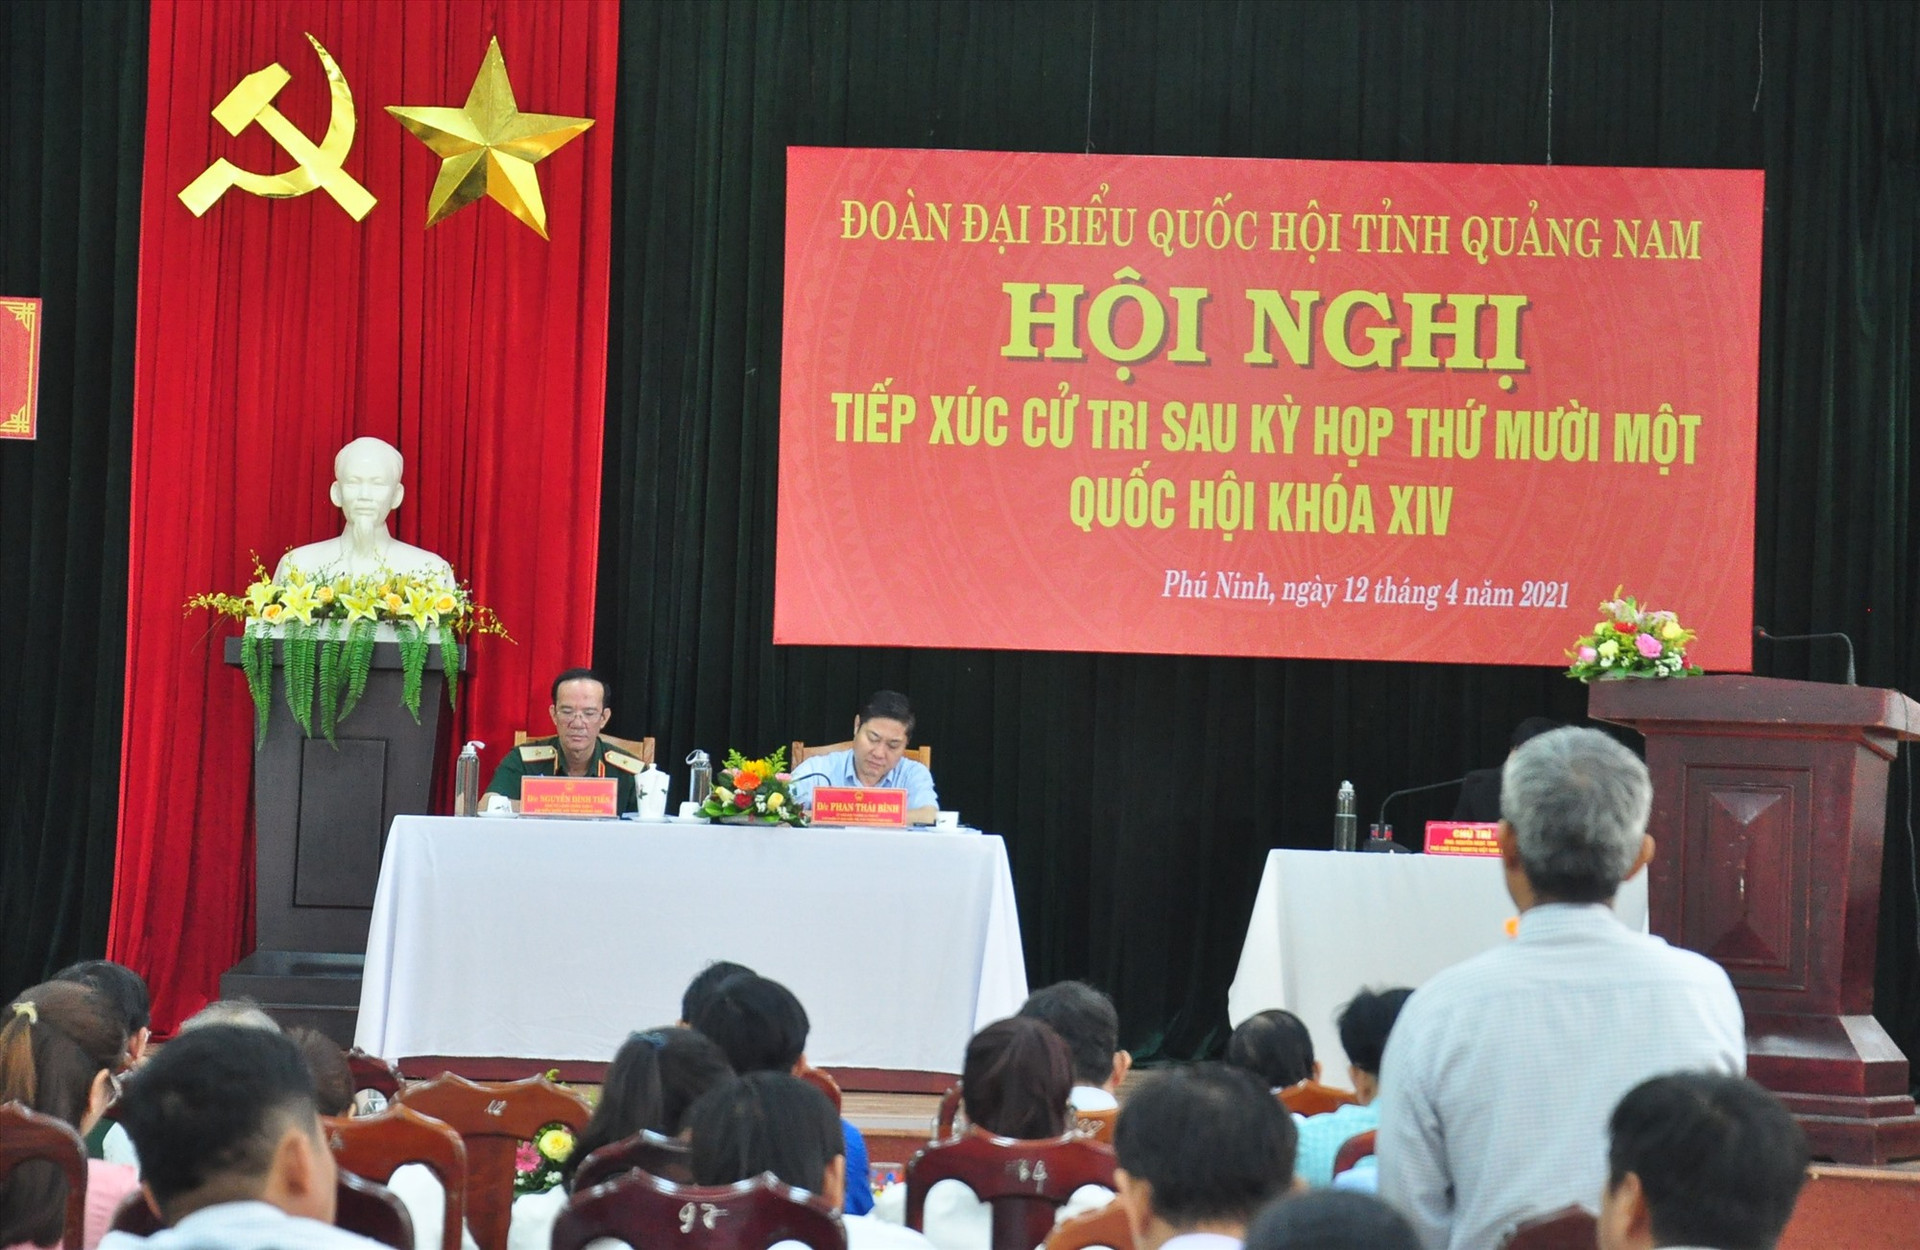 Đây là buổi tiếp xúc cử tri cuối cùng của Đoàn ĐBQH tỉnh Quảng Nam nhiệm kỳ 2021 - 2026 tại Phú Ninh. Ảnh: VINH ANH